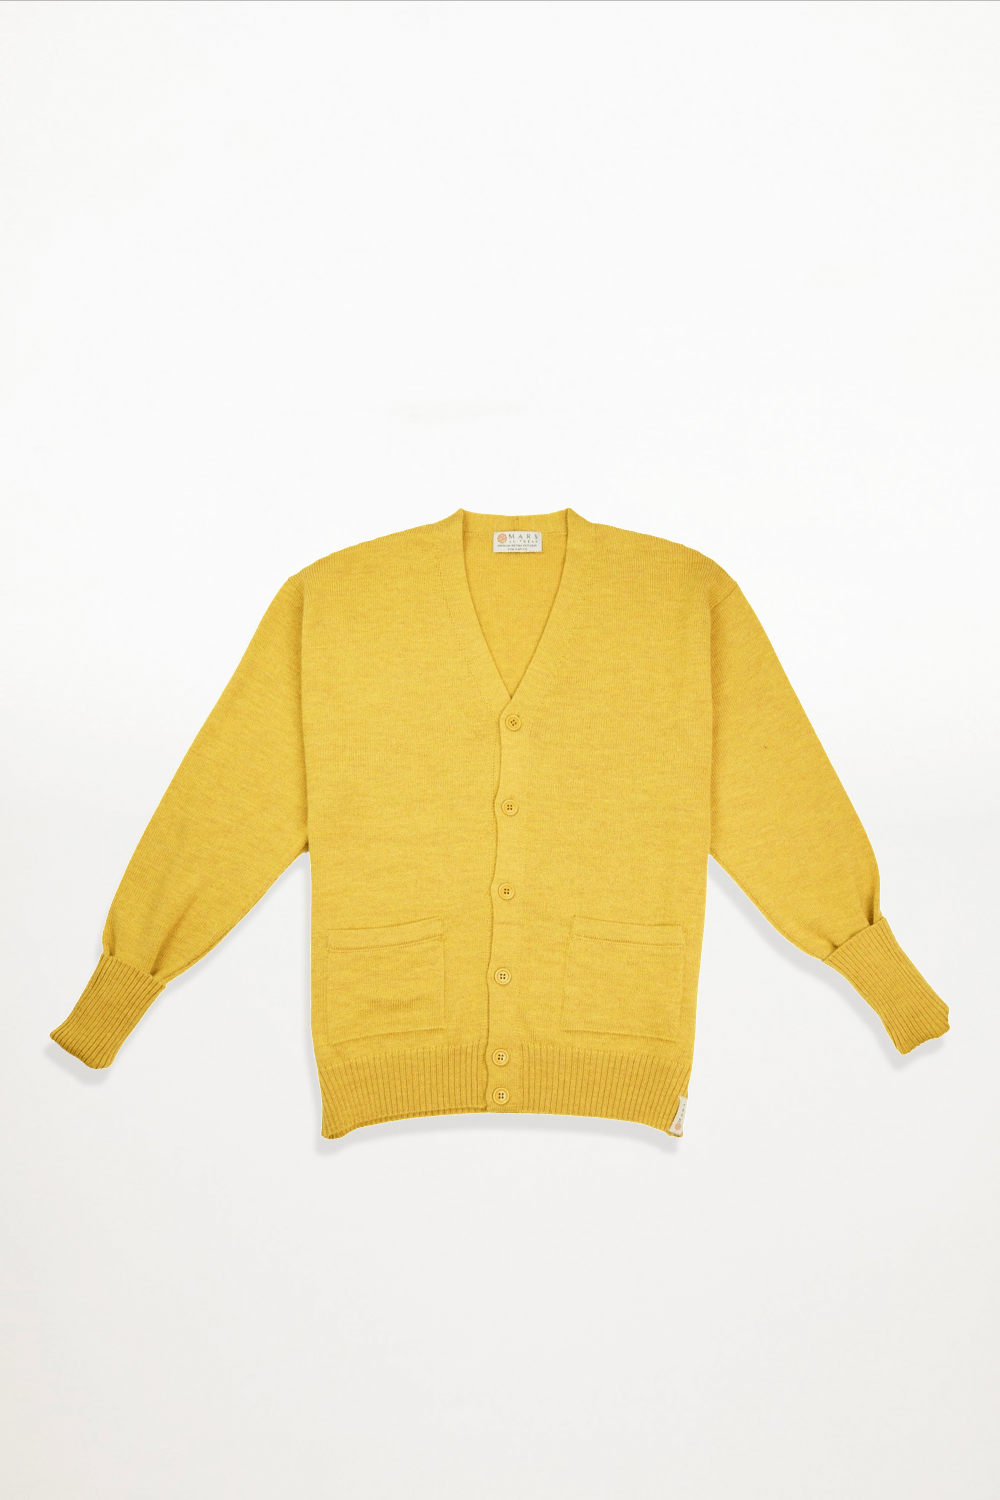 Mars Knitwear - Merino Wool Signature Cardigan - Mustard - Ensemble Studios